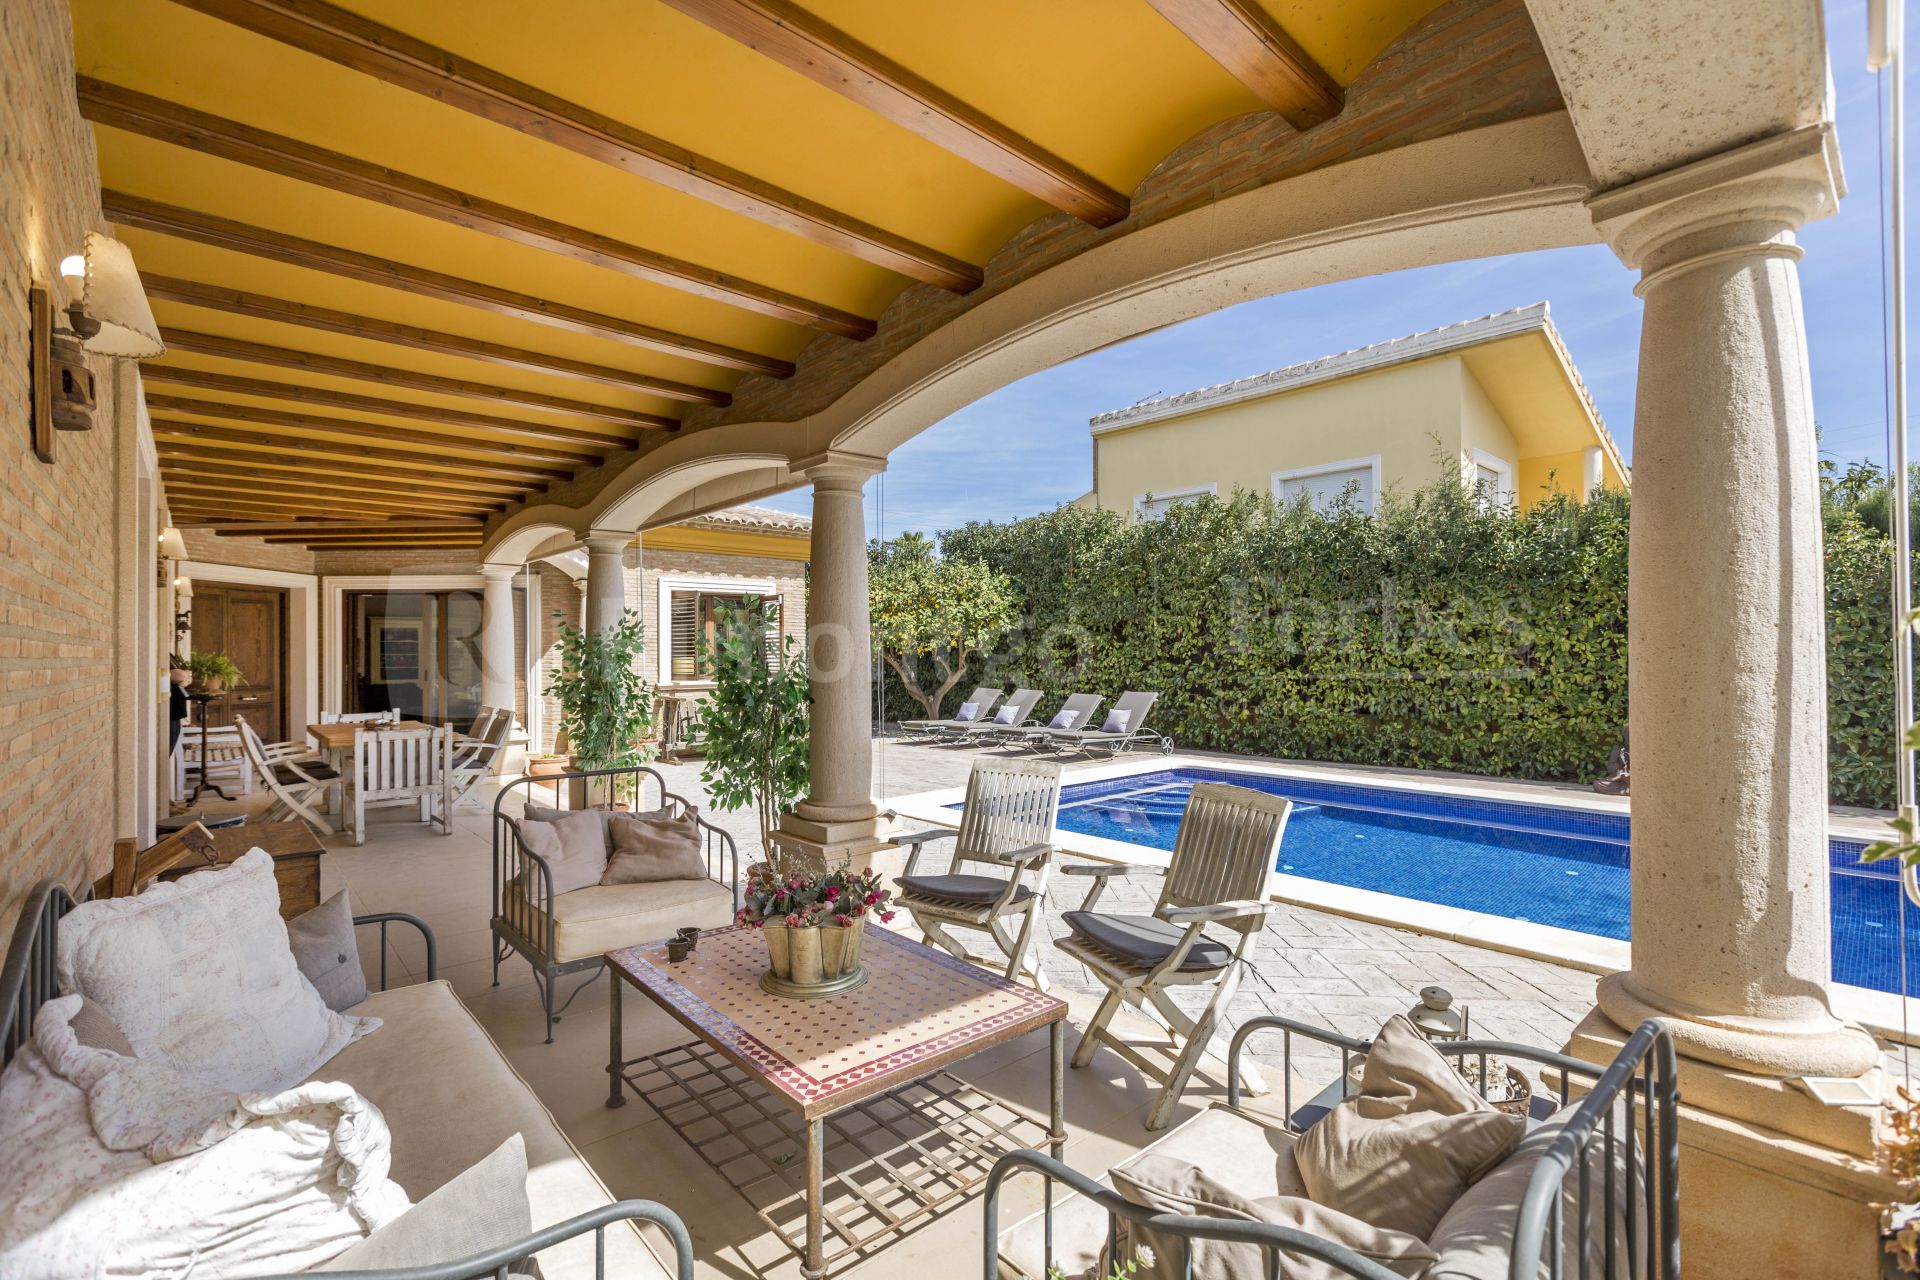 Elegante villa con terrazas y piscina en parcela con gran privacidad en Torre en Conill, Bétera.